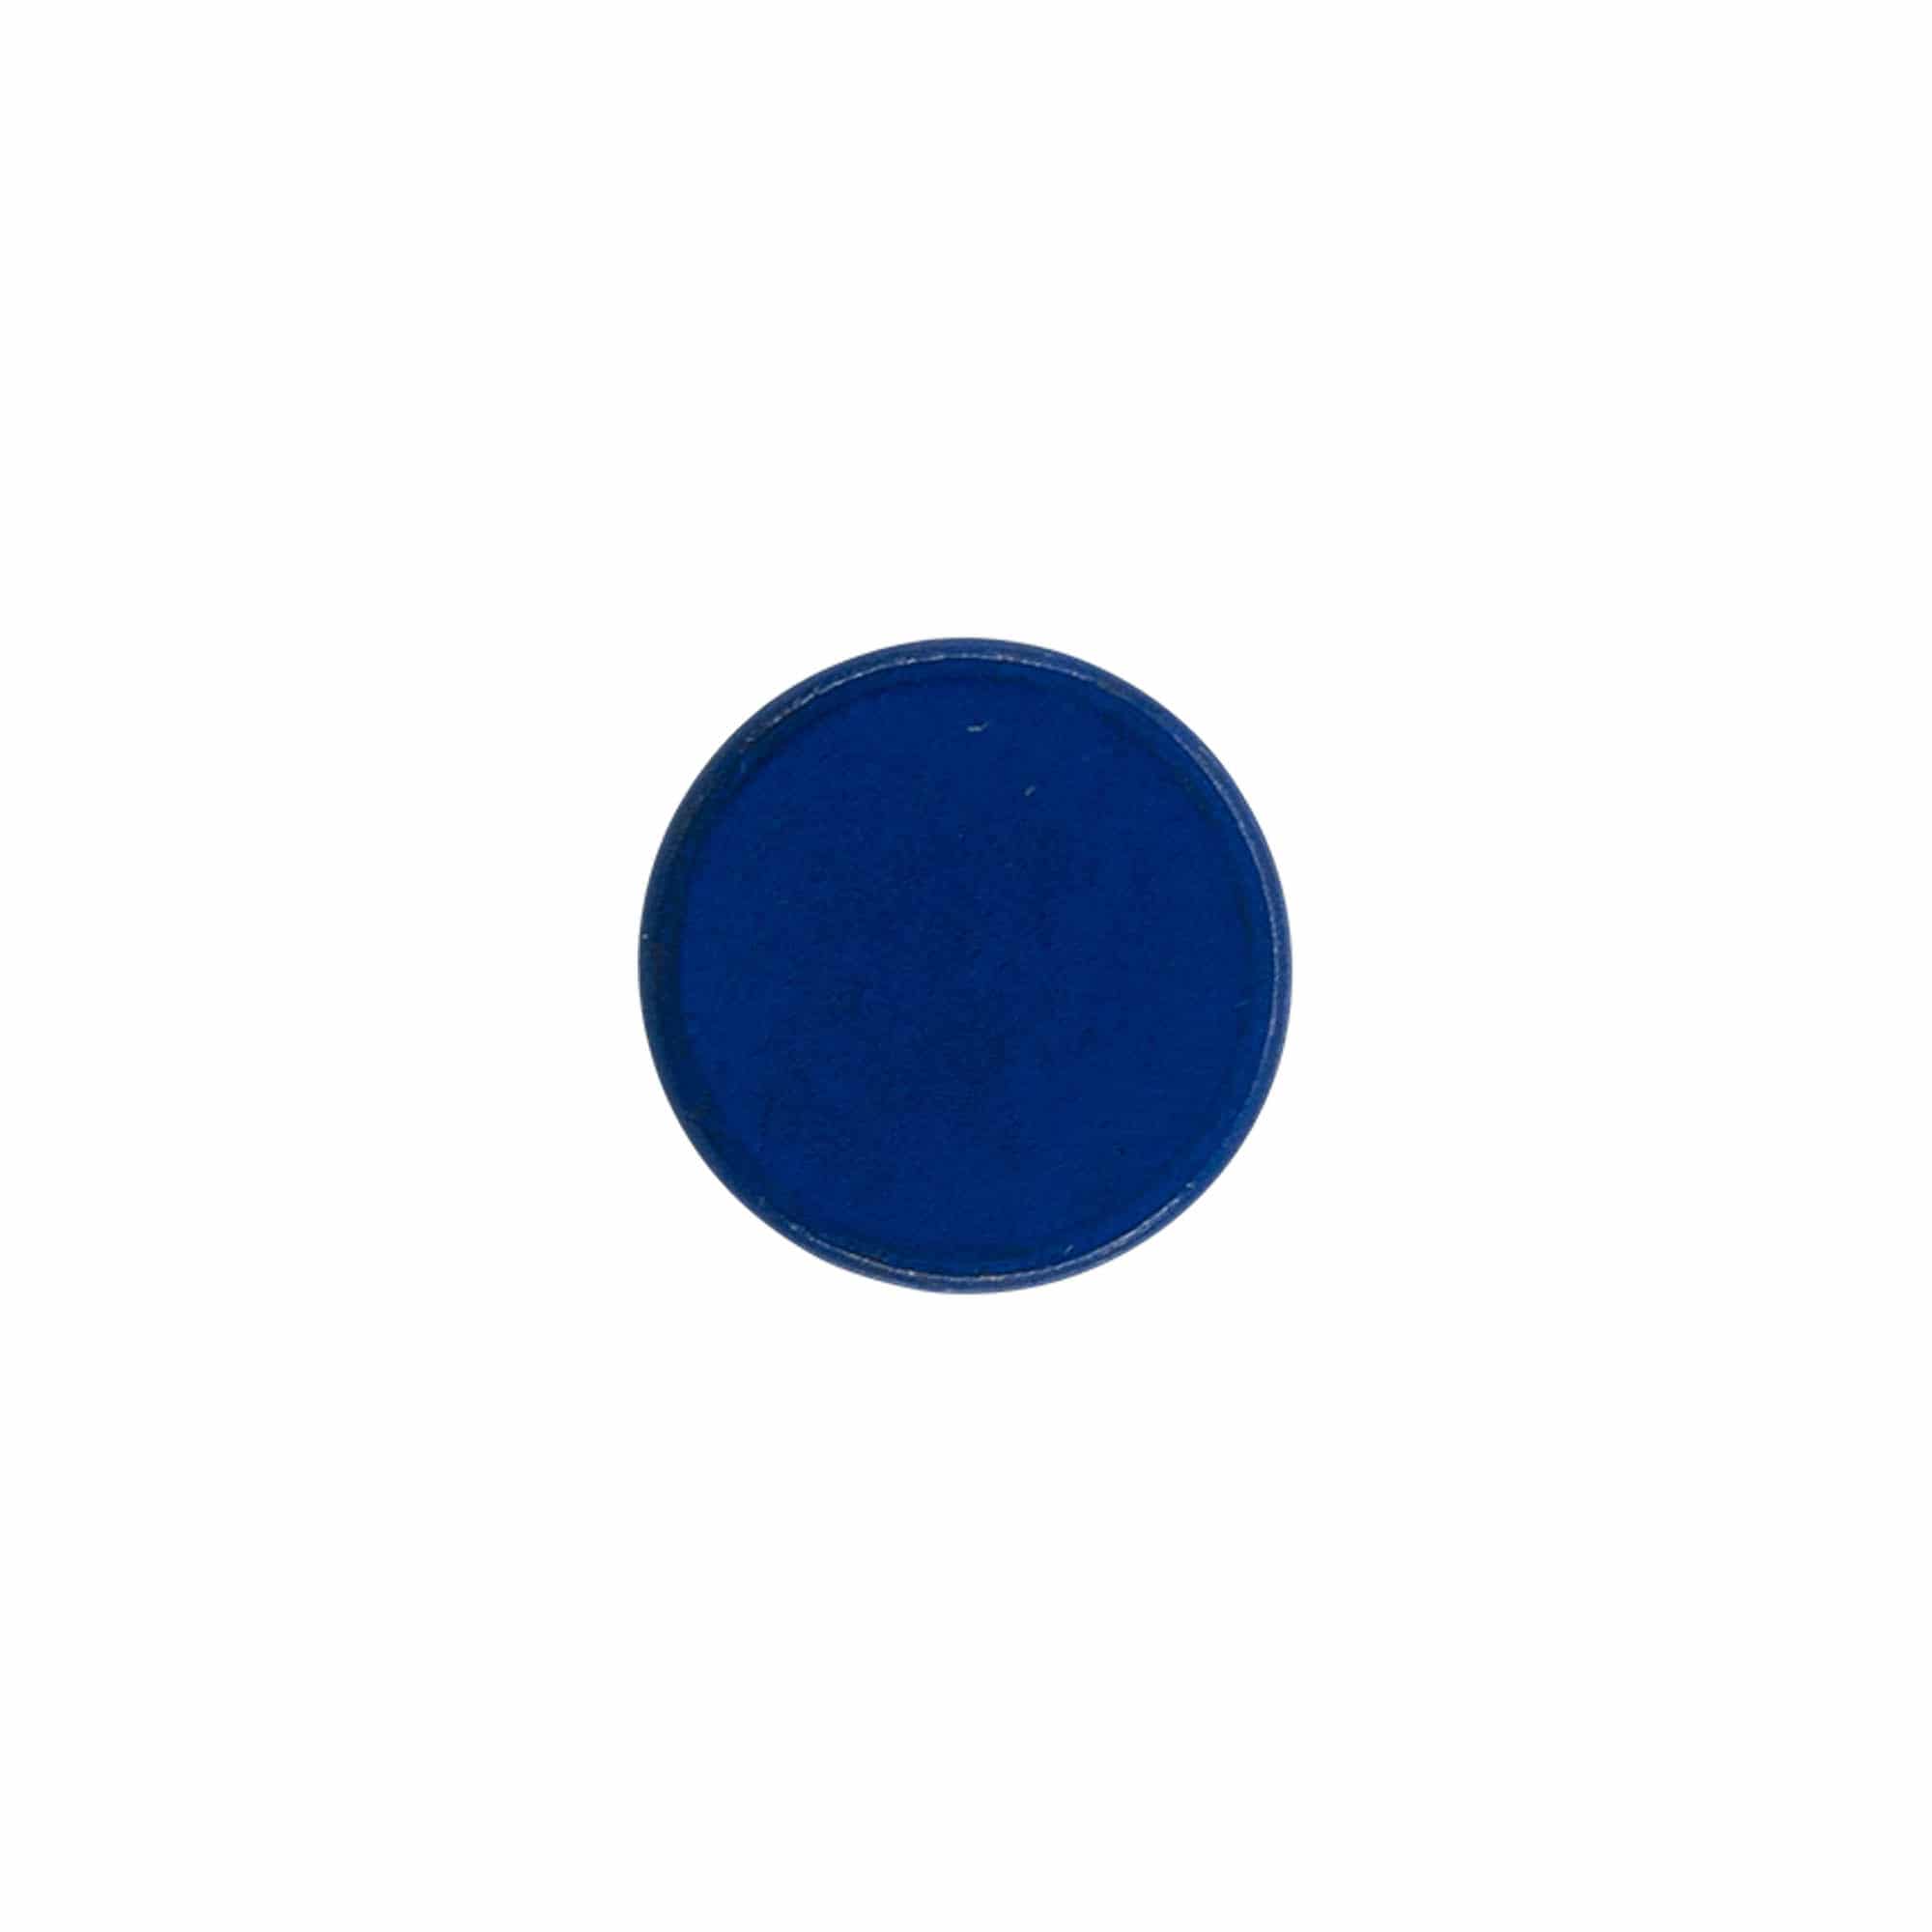 Dopkurk, 19 mm, hout, blauw, voor monding: kurk